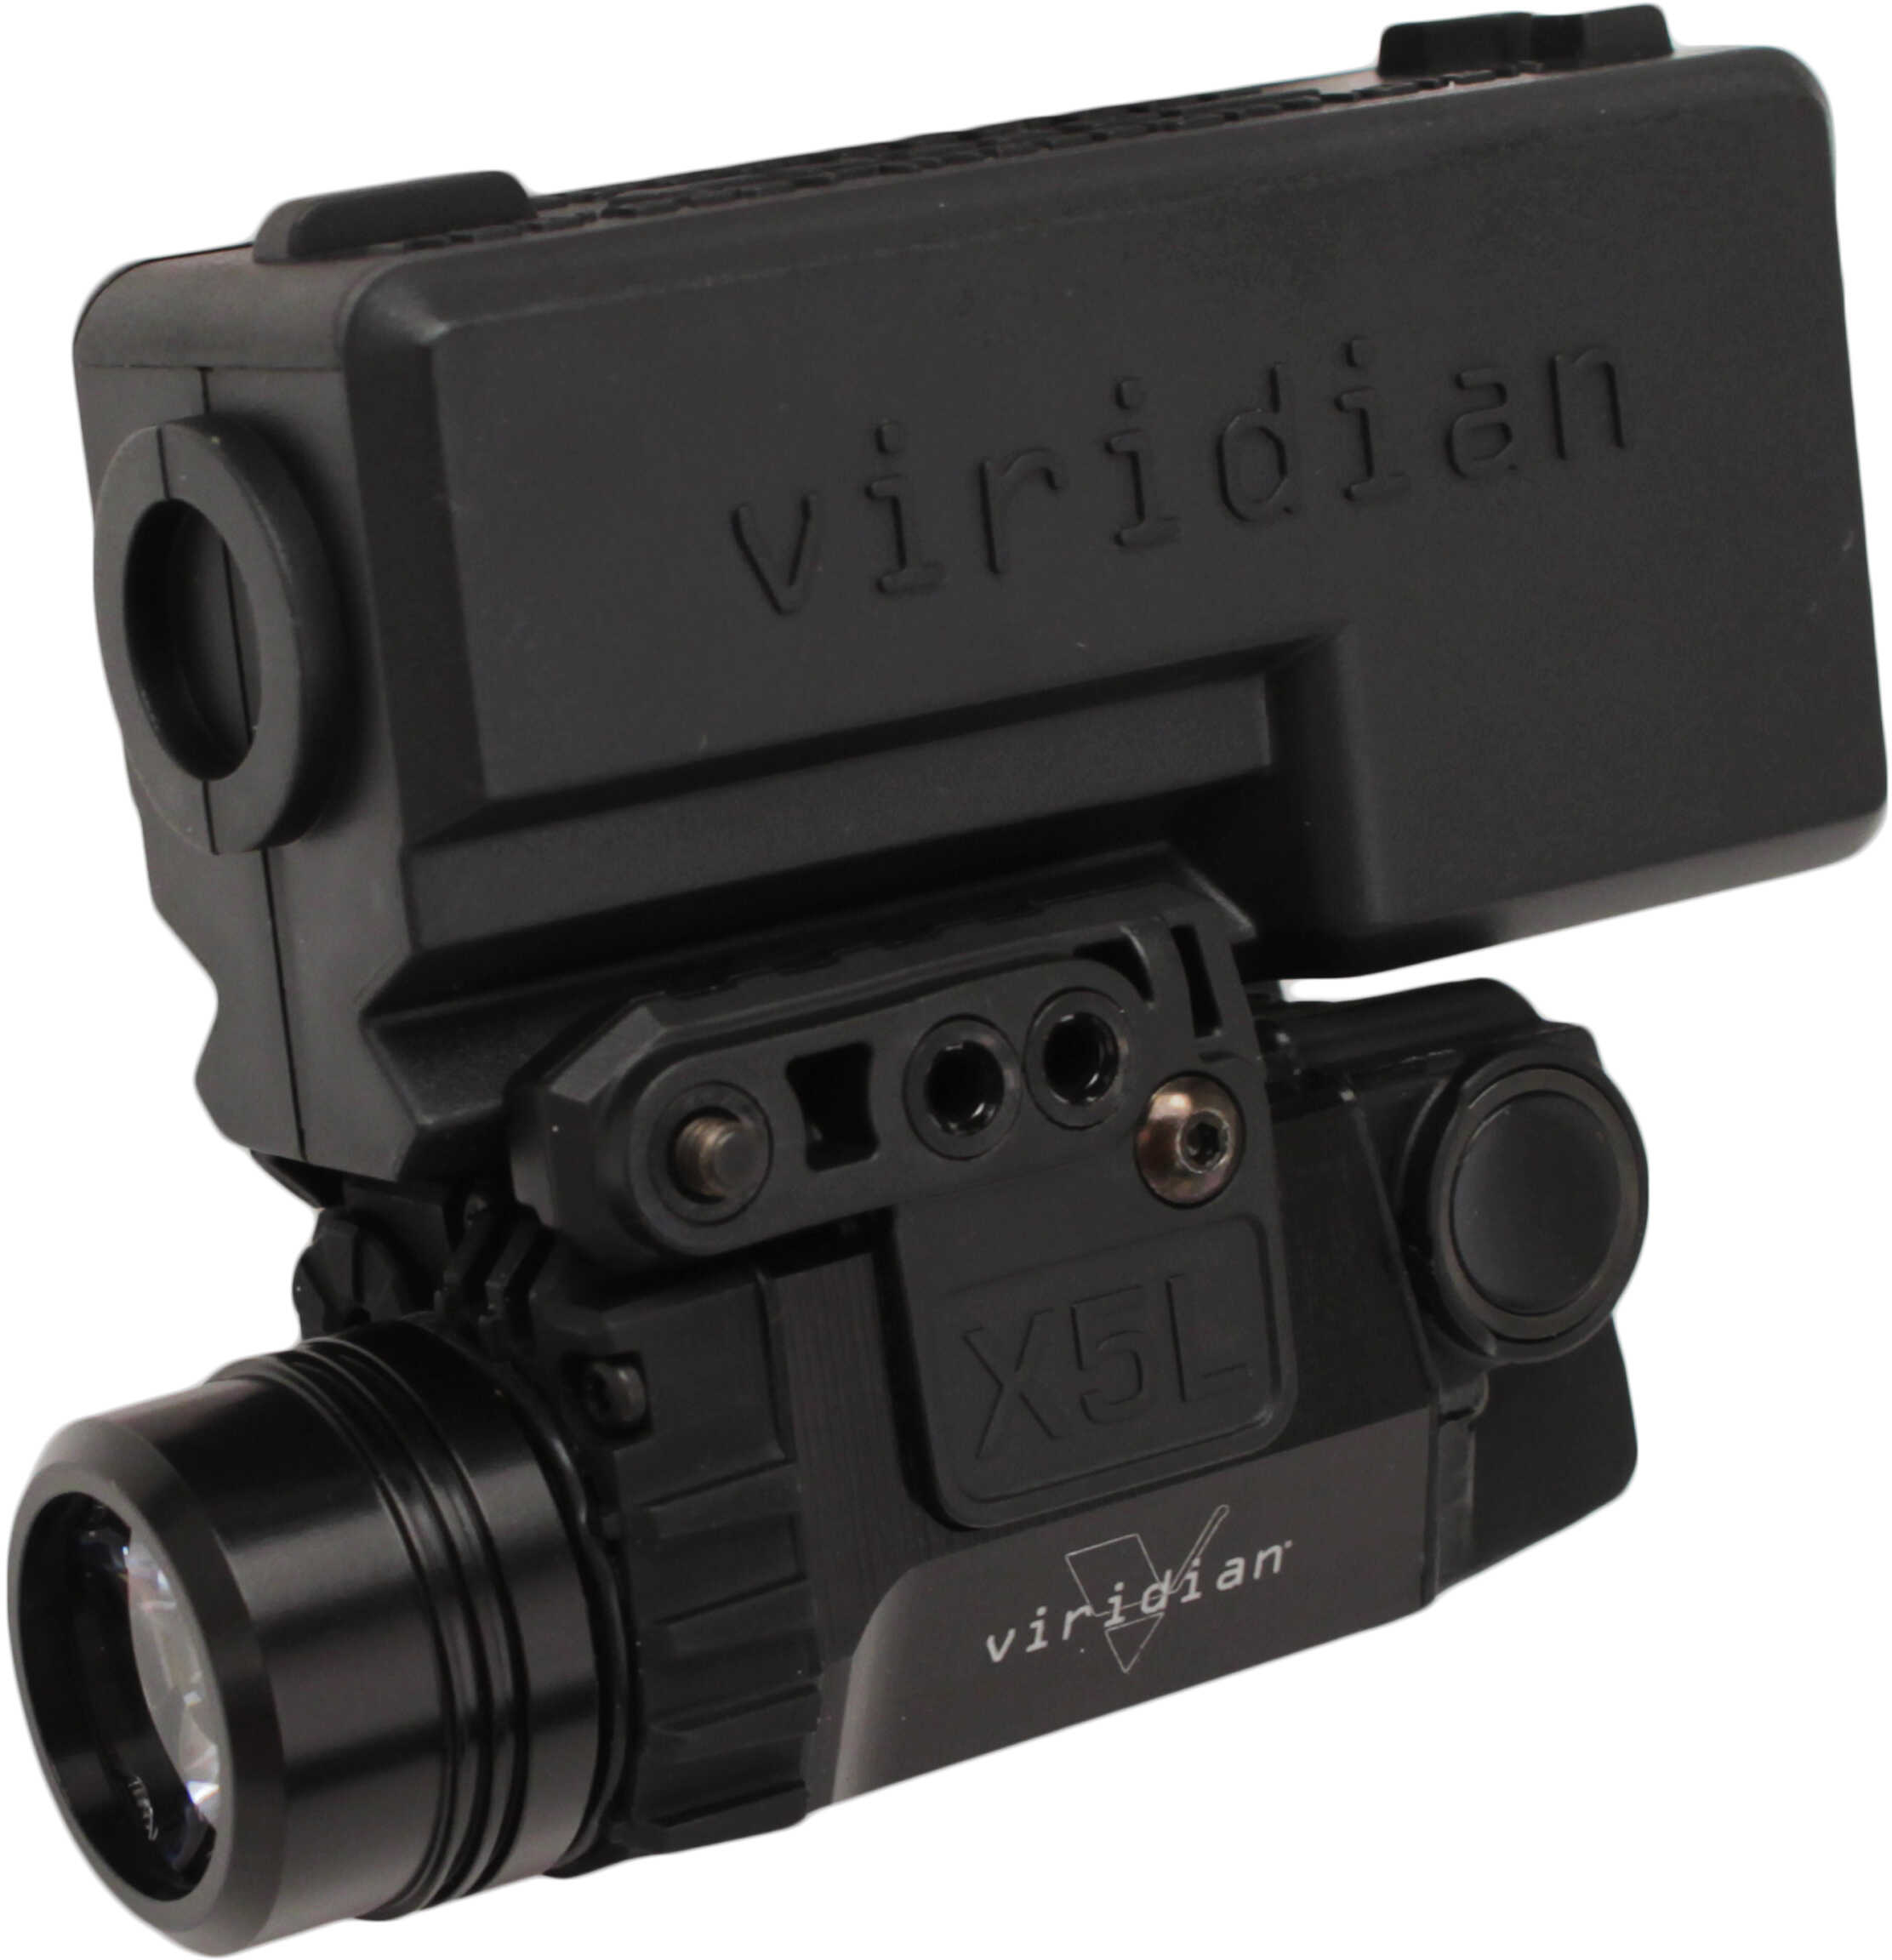 Viridian Weapon Technologies VIR UNIV Green LSR/TAC LGT X5L